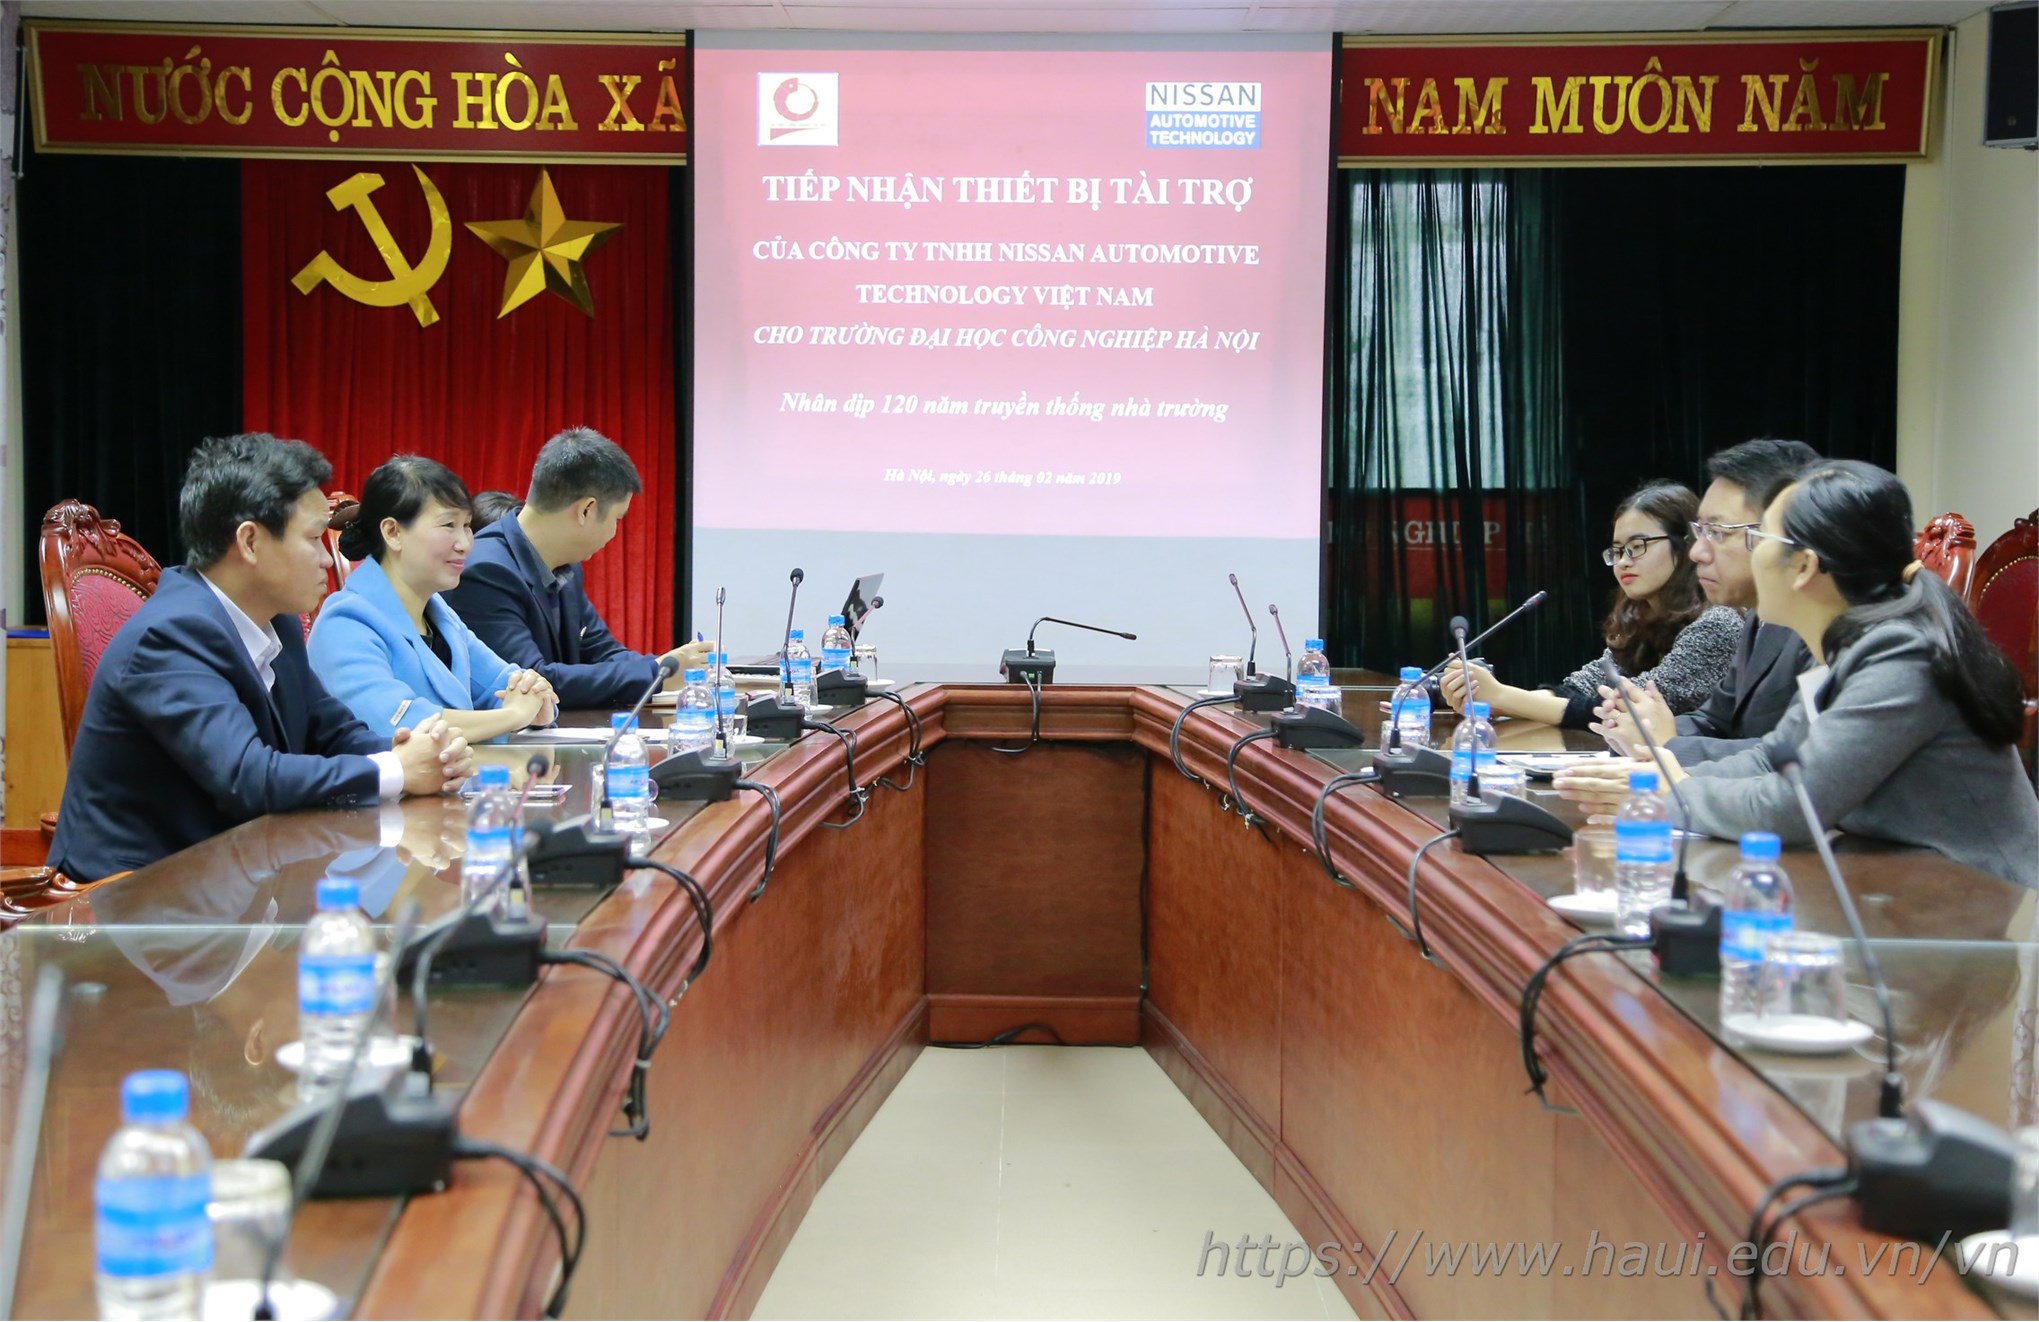 Trường Đại học Công nghiệp Hà Nội tiếp nhận thiết bị tài trợ của Công ty TNHH Nissan Automotive Technology Việt Nam